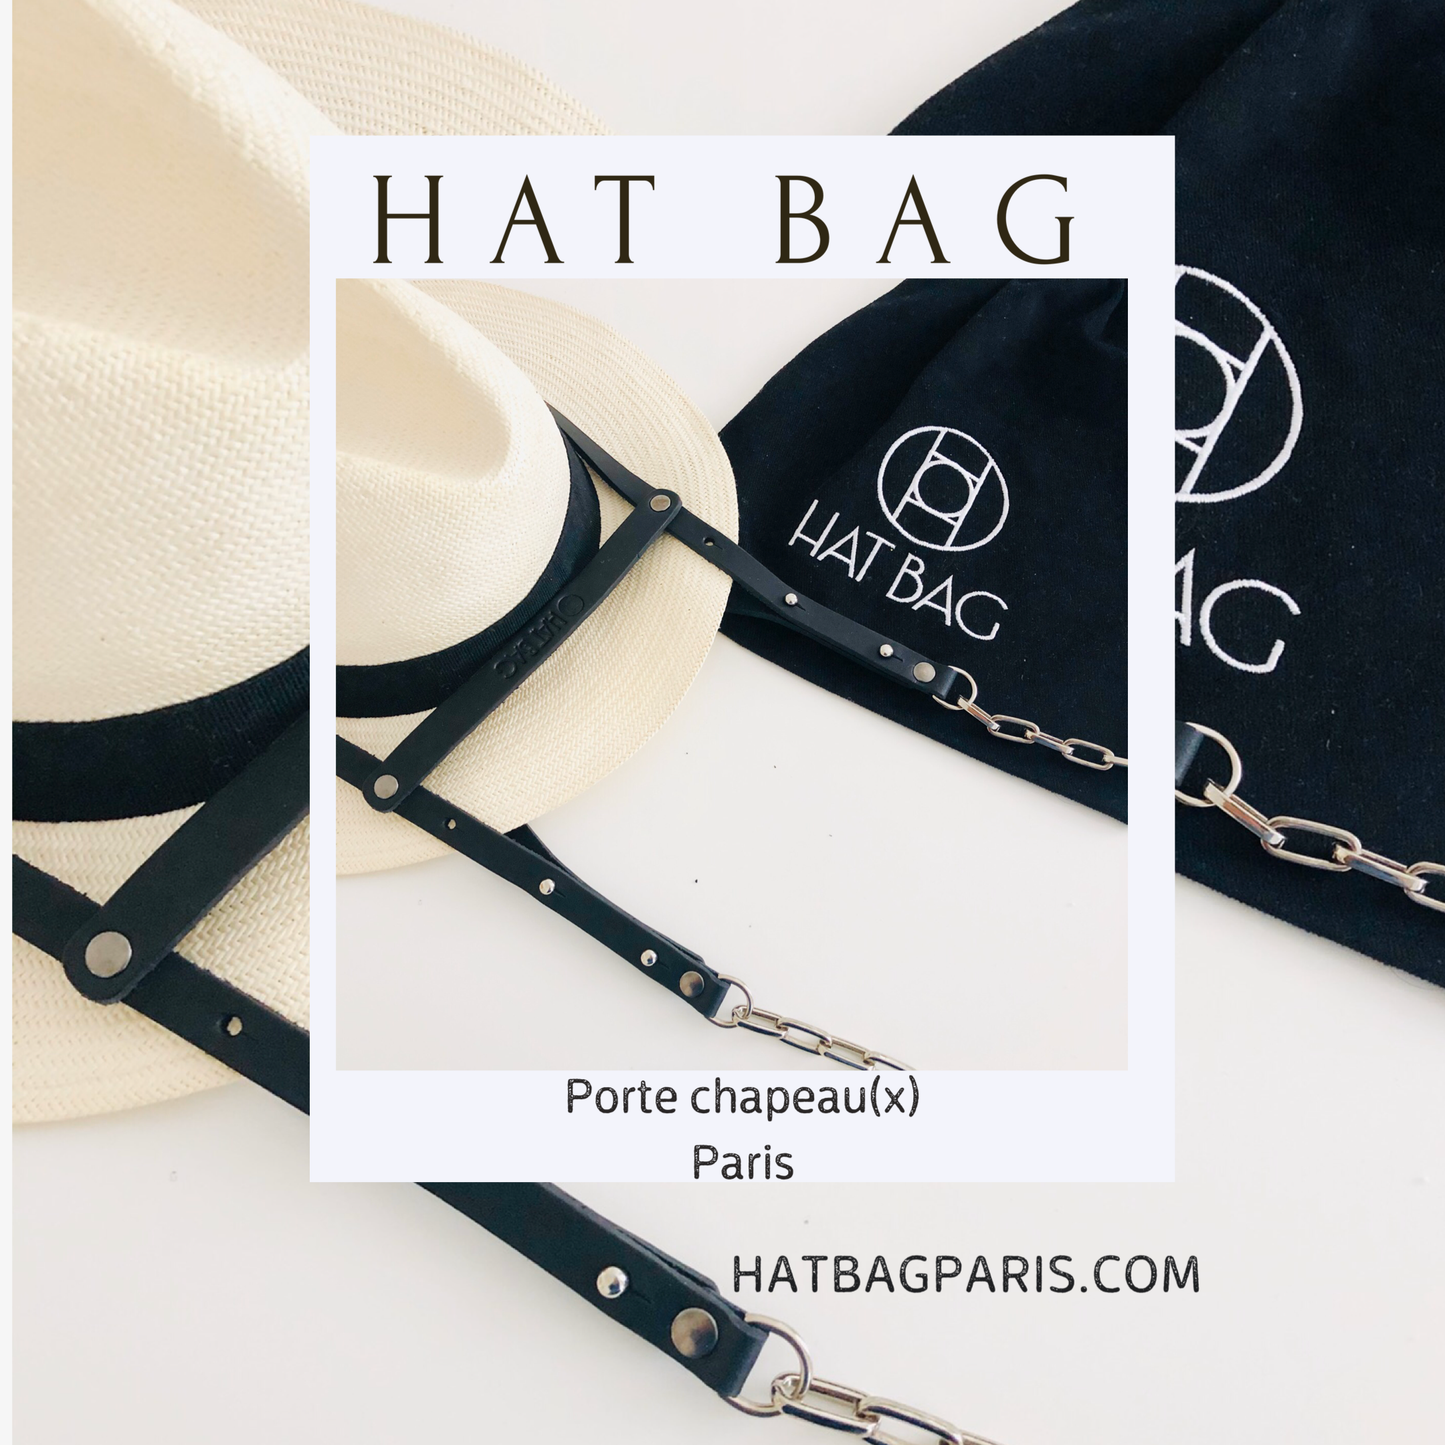 Hat Bag Hat Bag "Paris" in black leather and silver chains - hat bag paris